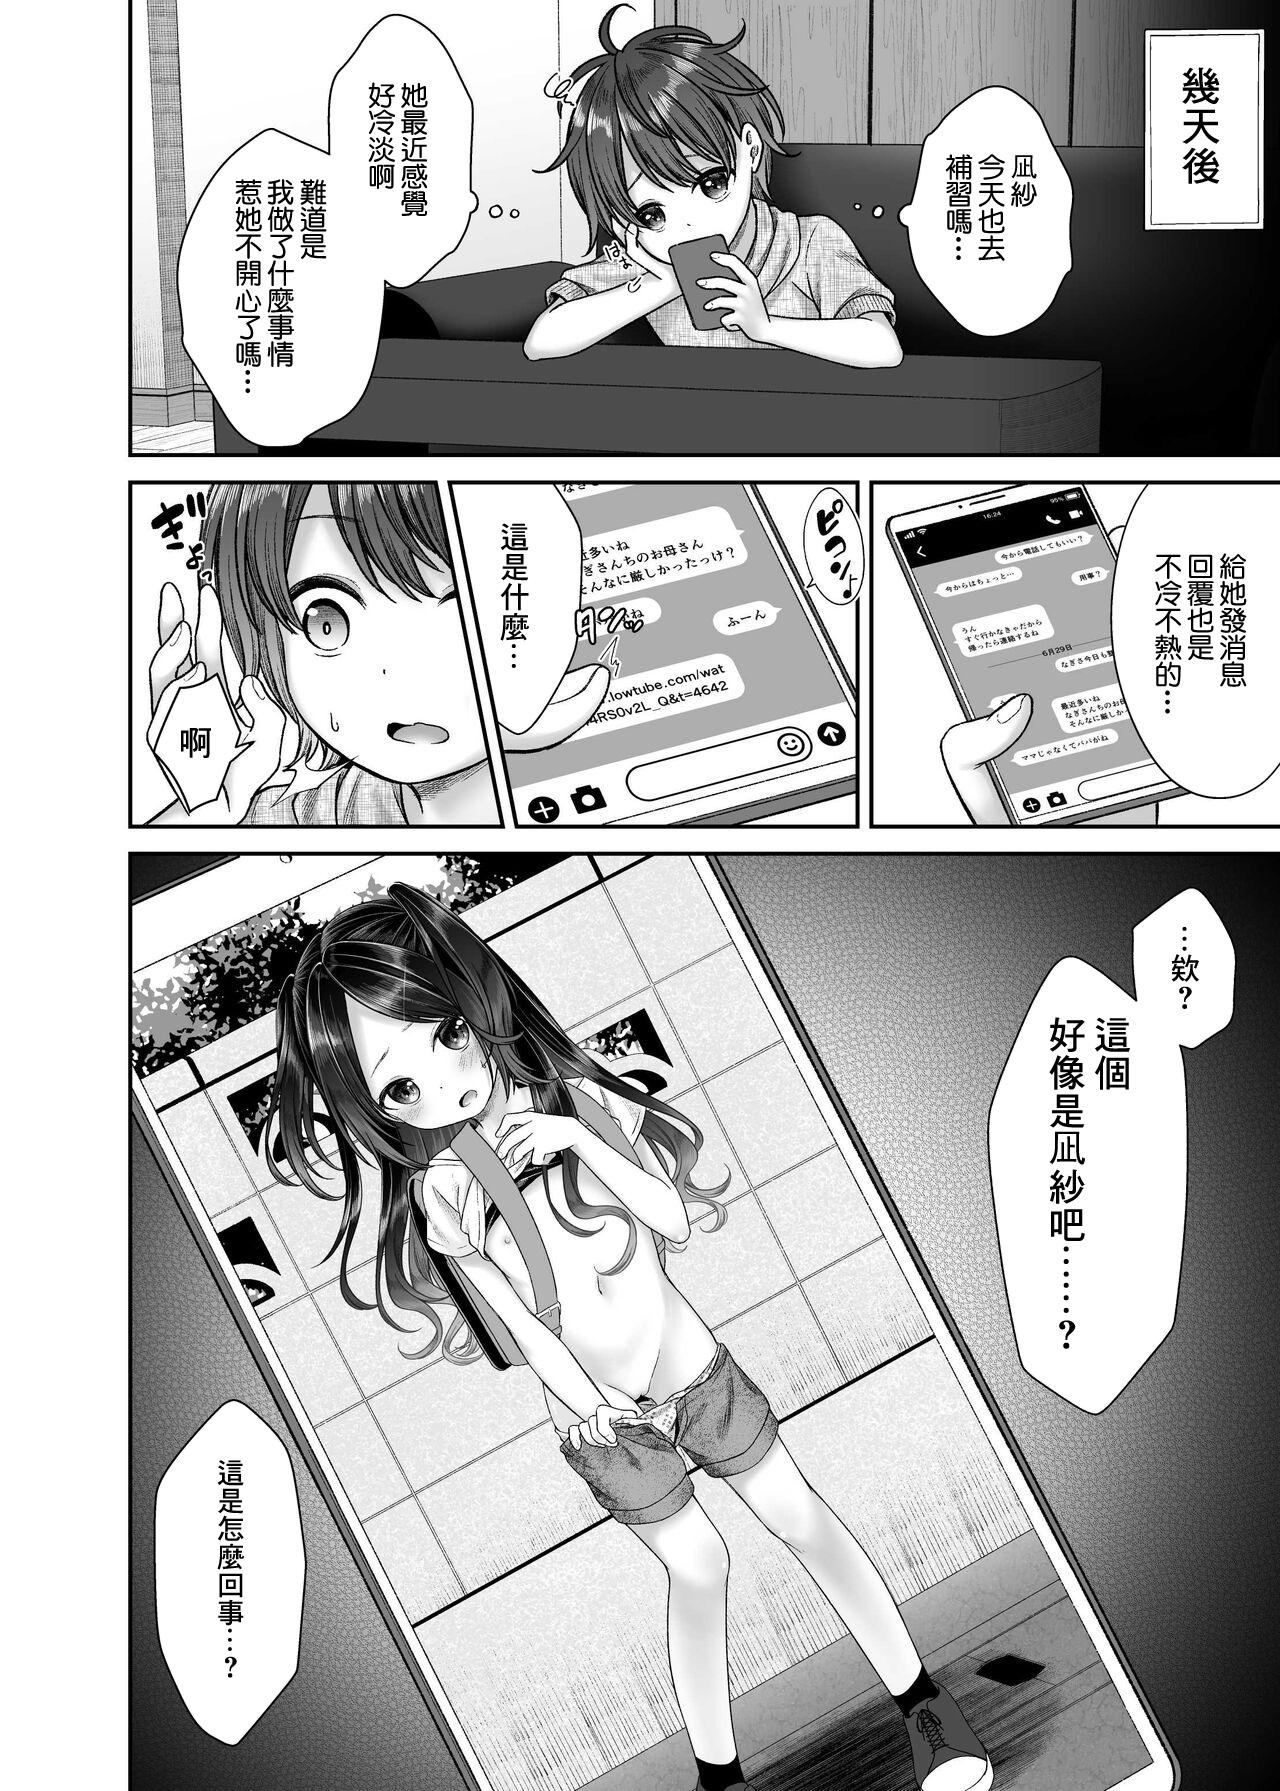 Old Vs Young JS4 NTR Haishin Manga - Original Body Massage - Page 8